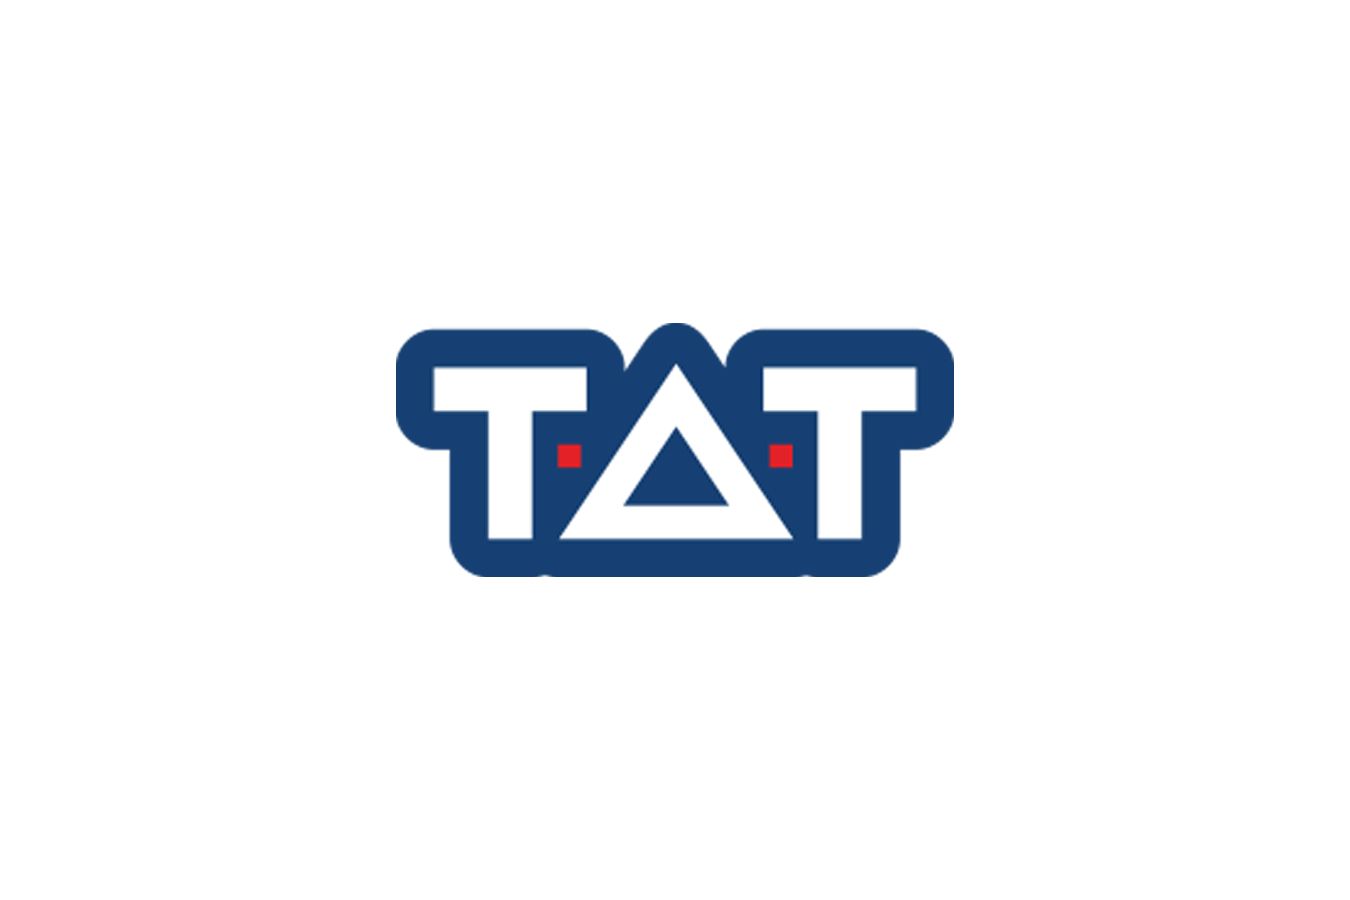 TAT_Logo